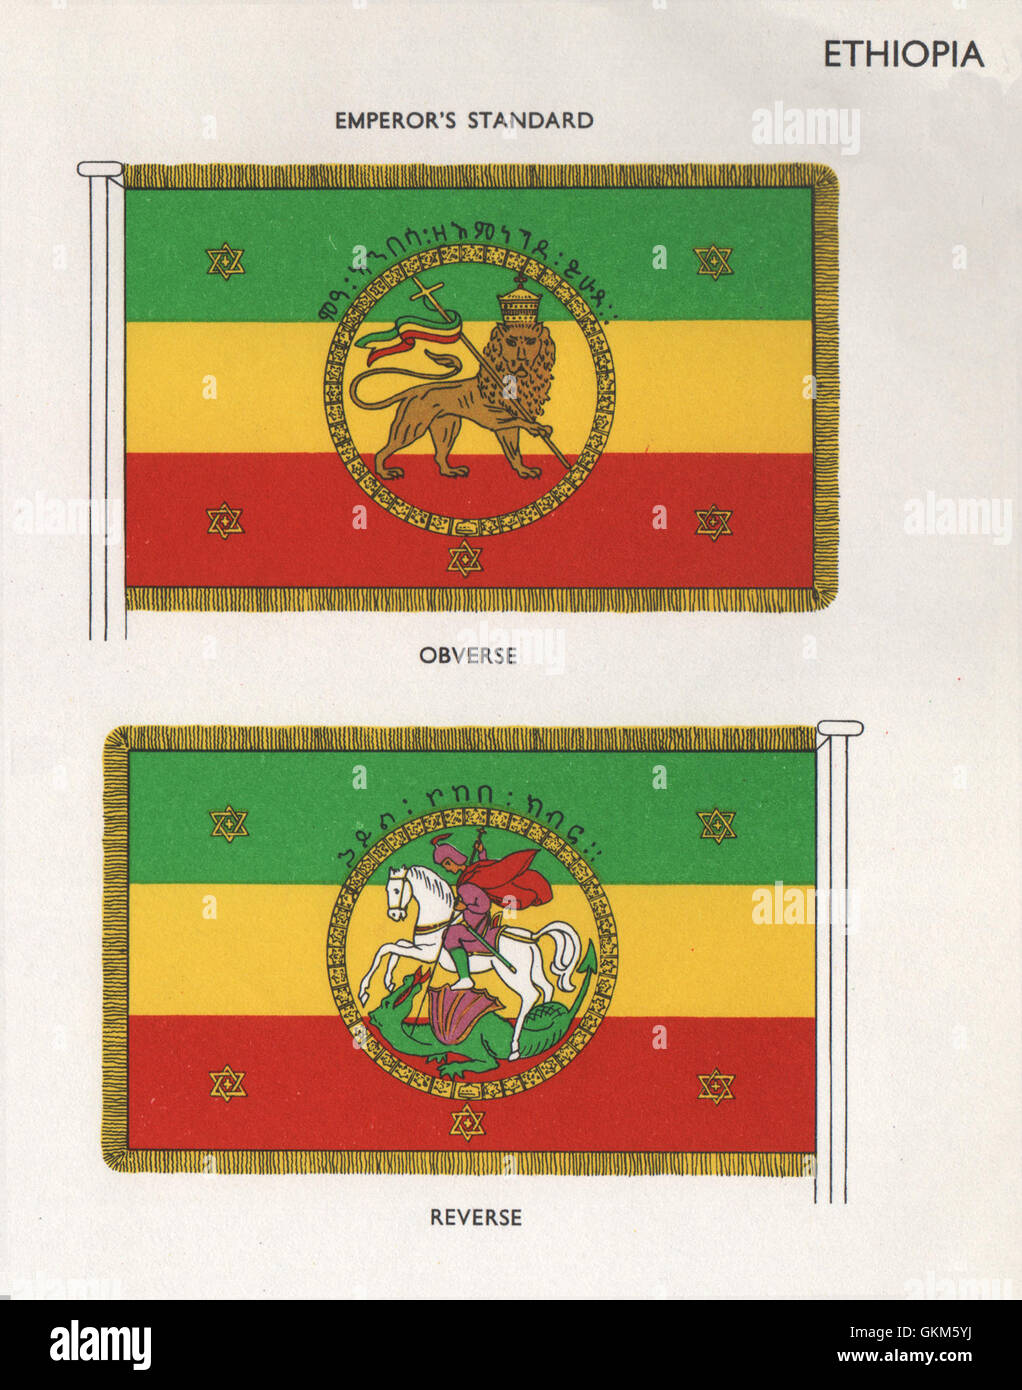 Etiopia bandiere. L'imperatore lo standard. Complementare. La retromarcia, vintage print 1958 Foto Stock